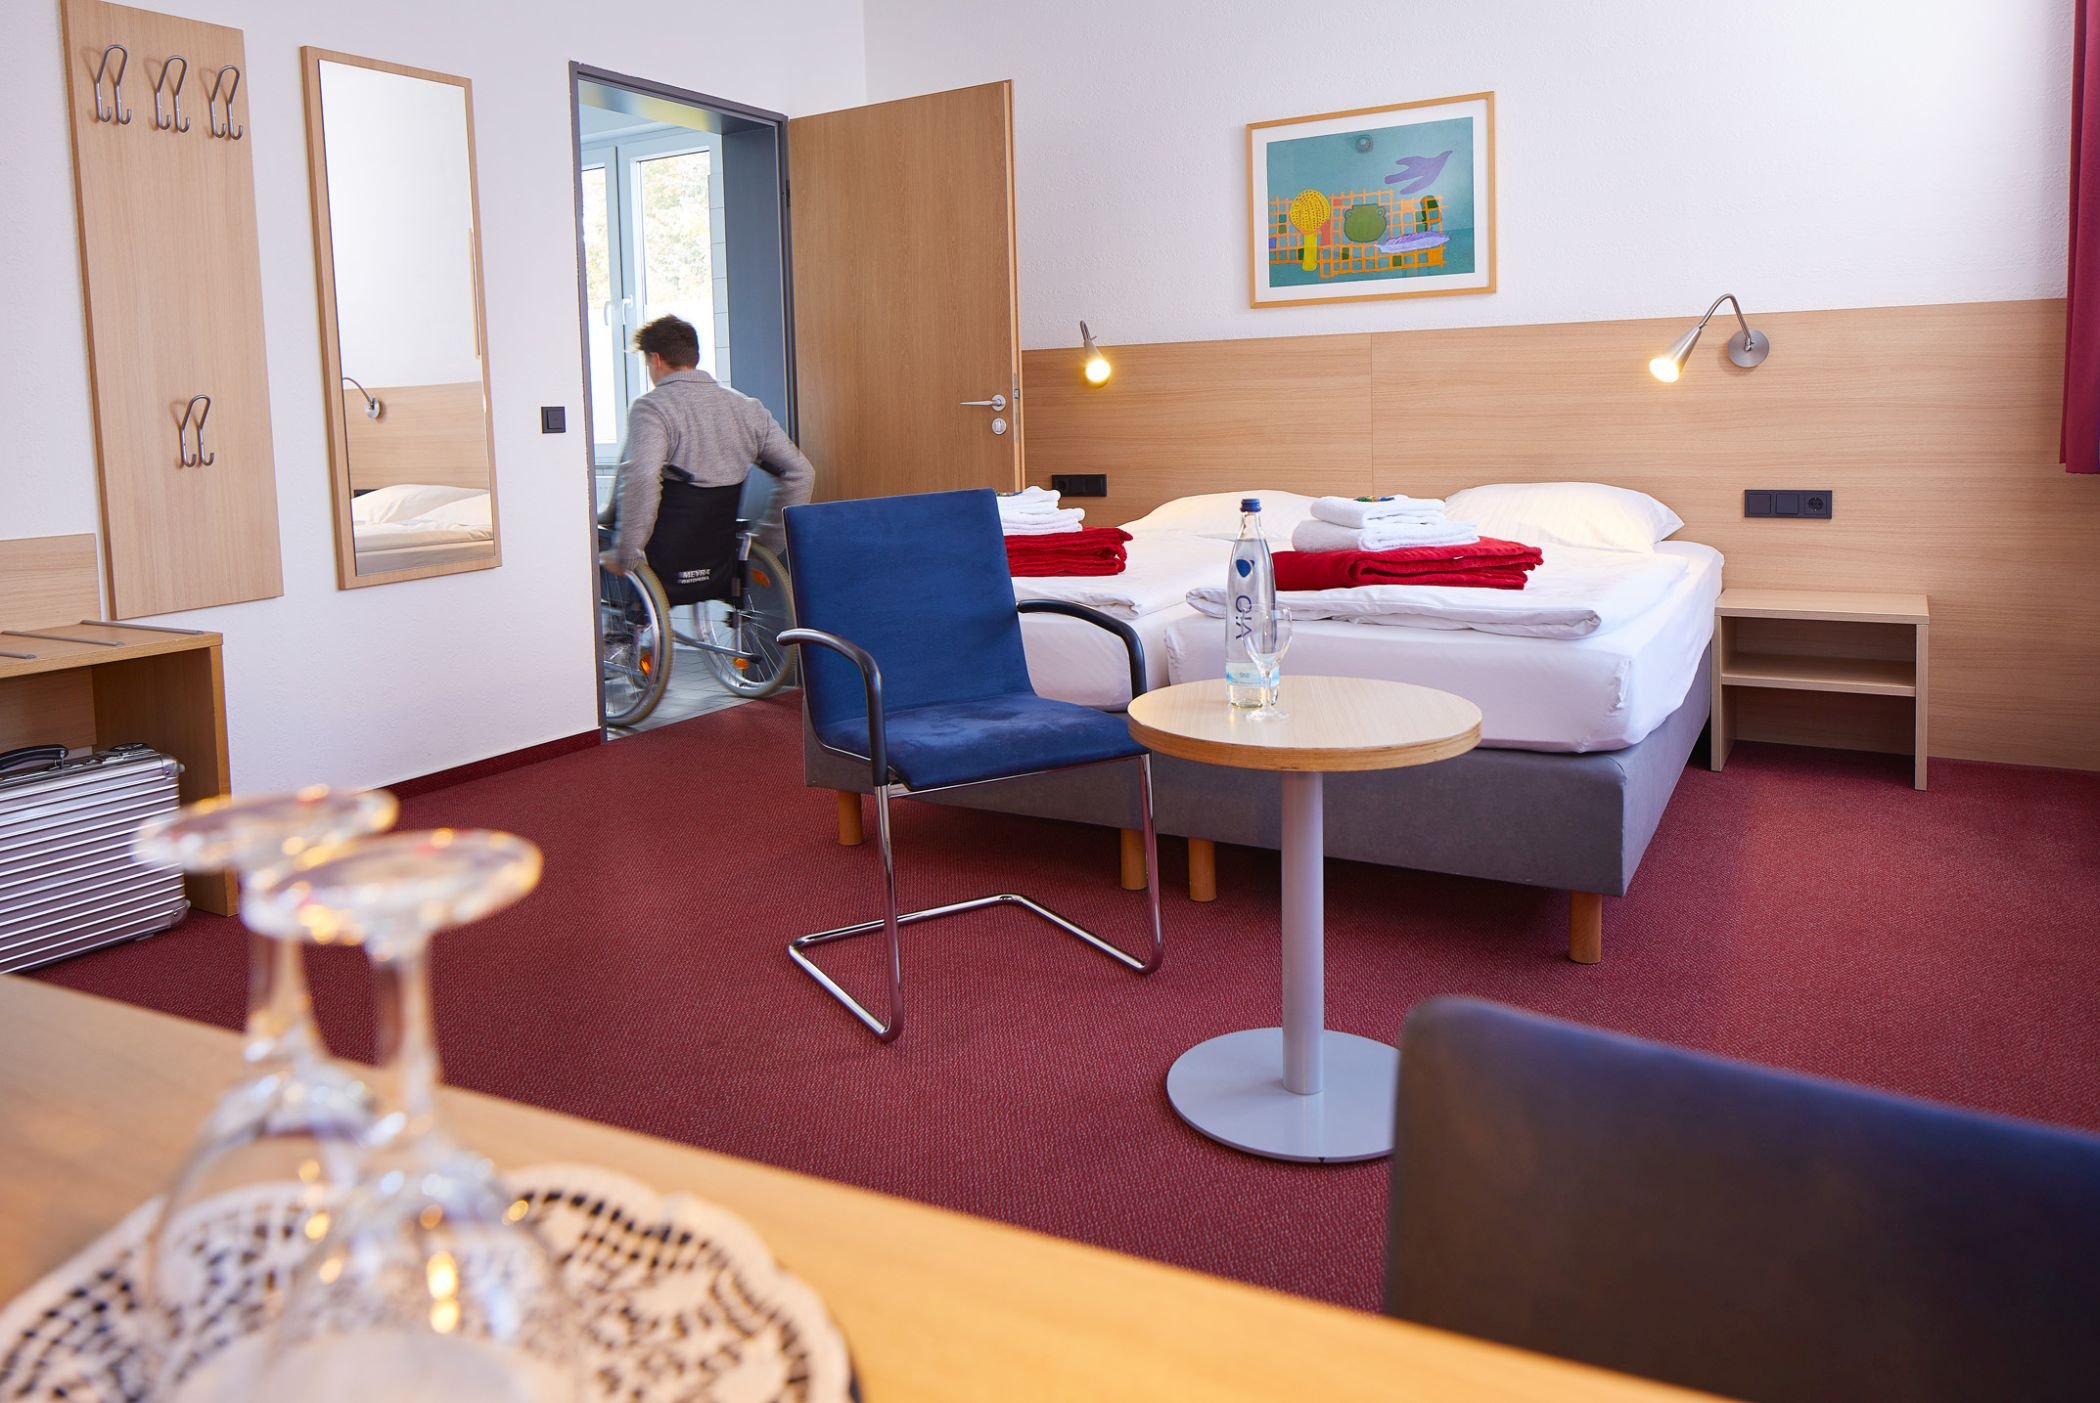 Foto: Nach dem Prinzip "Reisen für alle" wird im Hotel Haus vom Guten Hirten Inklusion für Gäste und Mitarbeiter*innen gelebt.Foto: LWL/Metzdorf